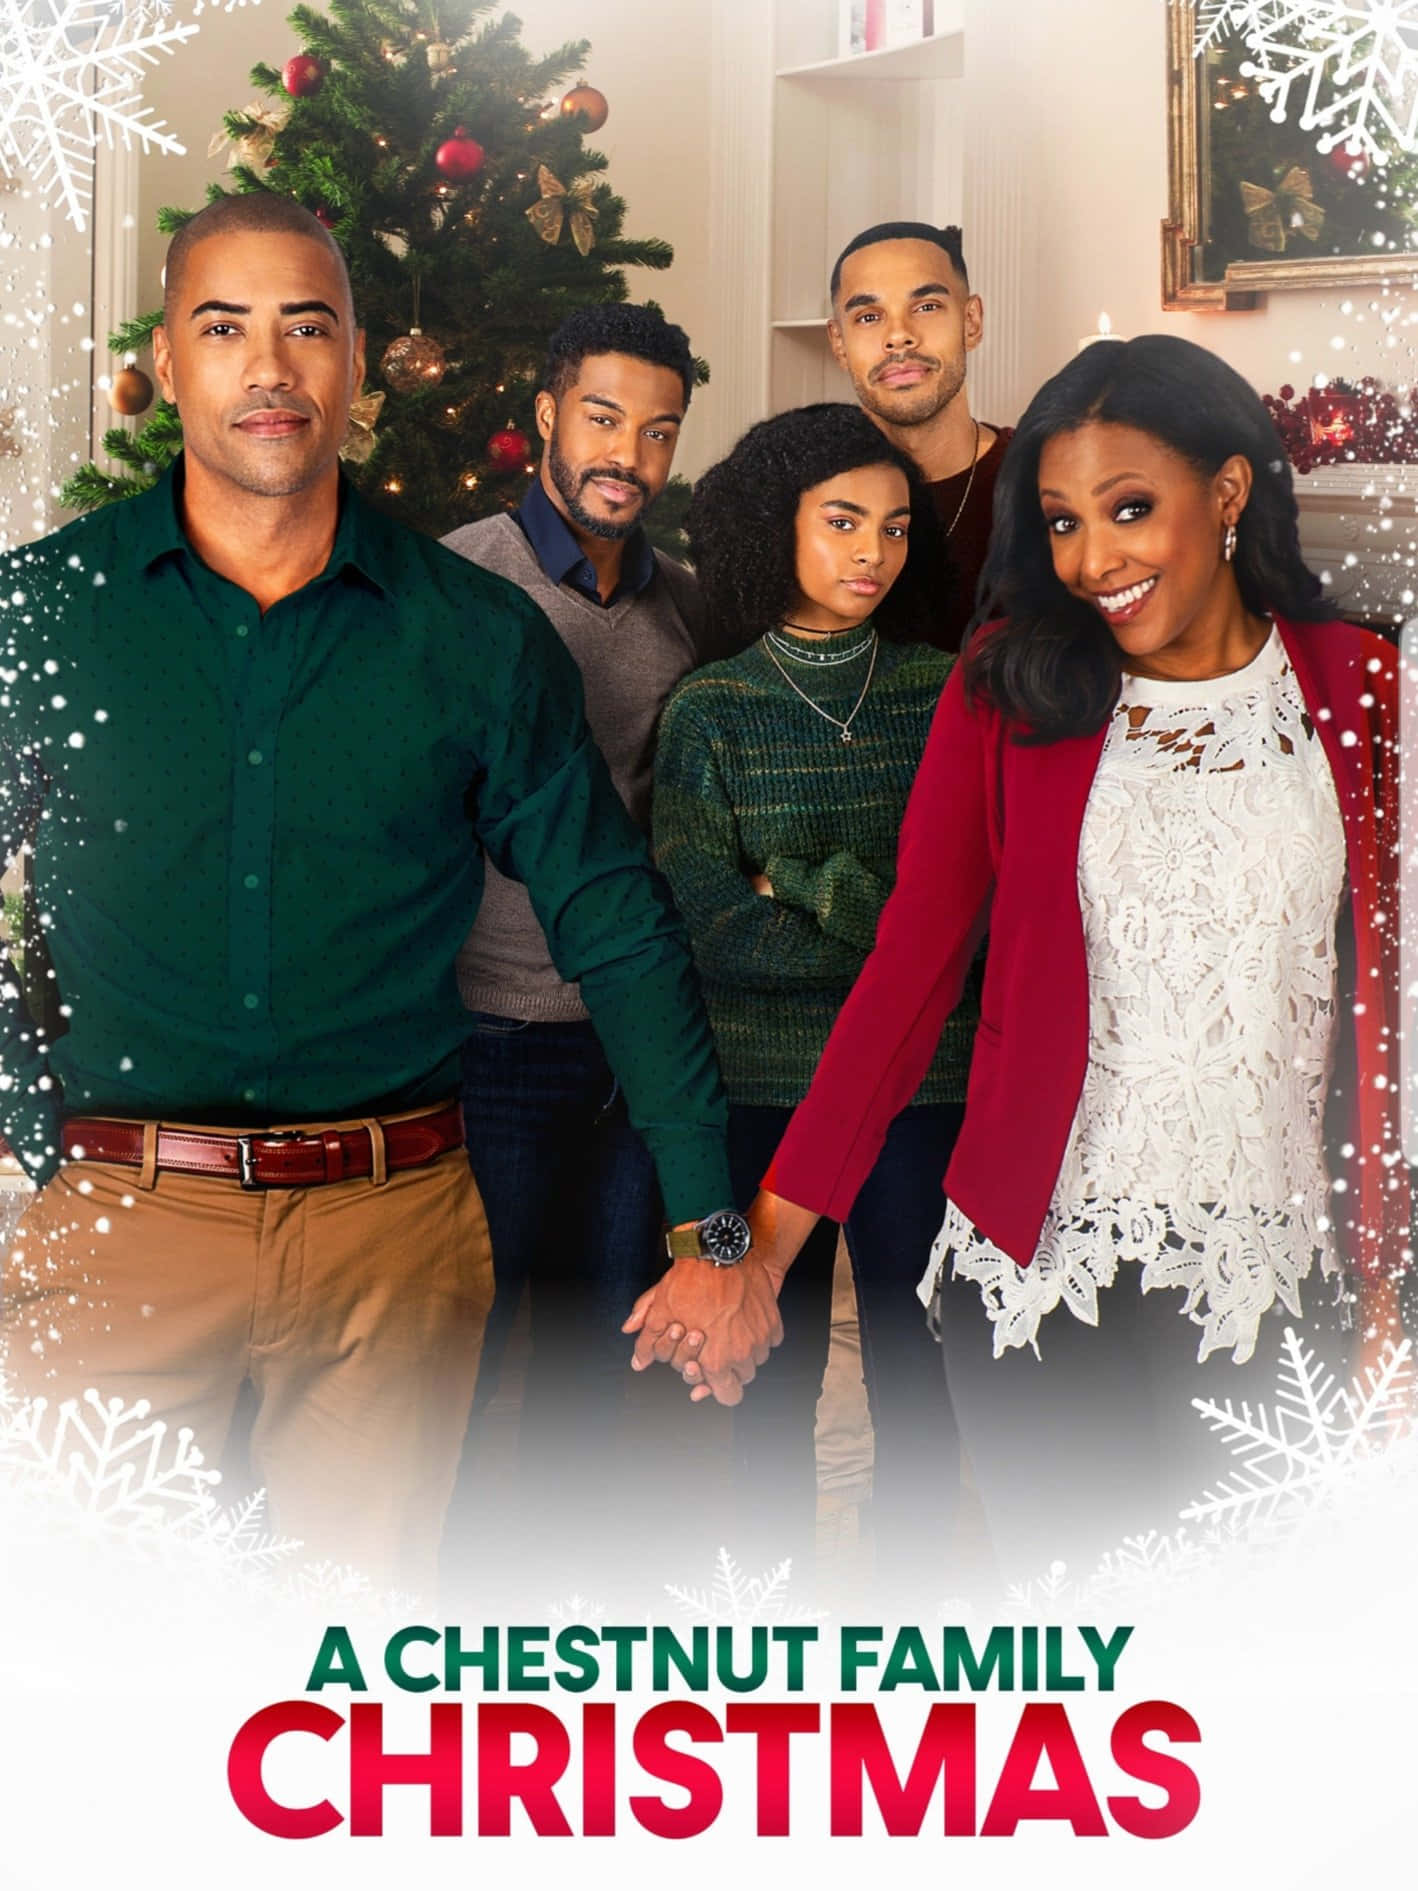 Julet posterbillede af Chestnut Black-familien.